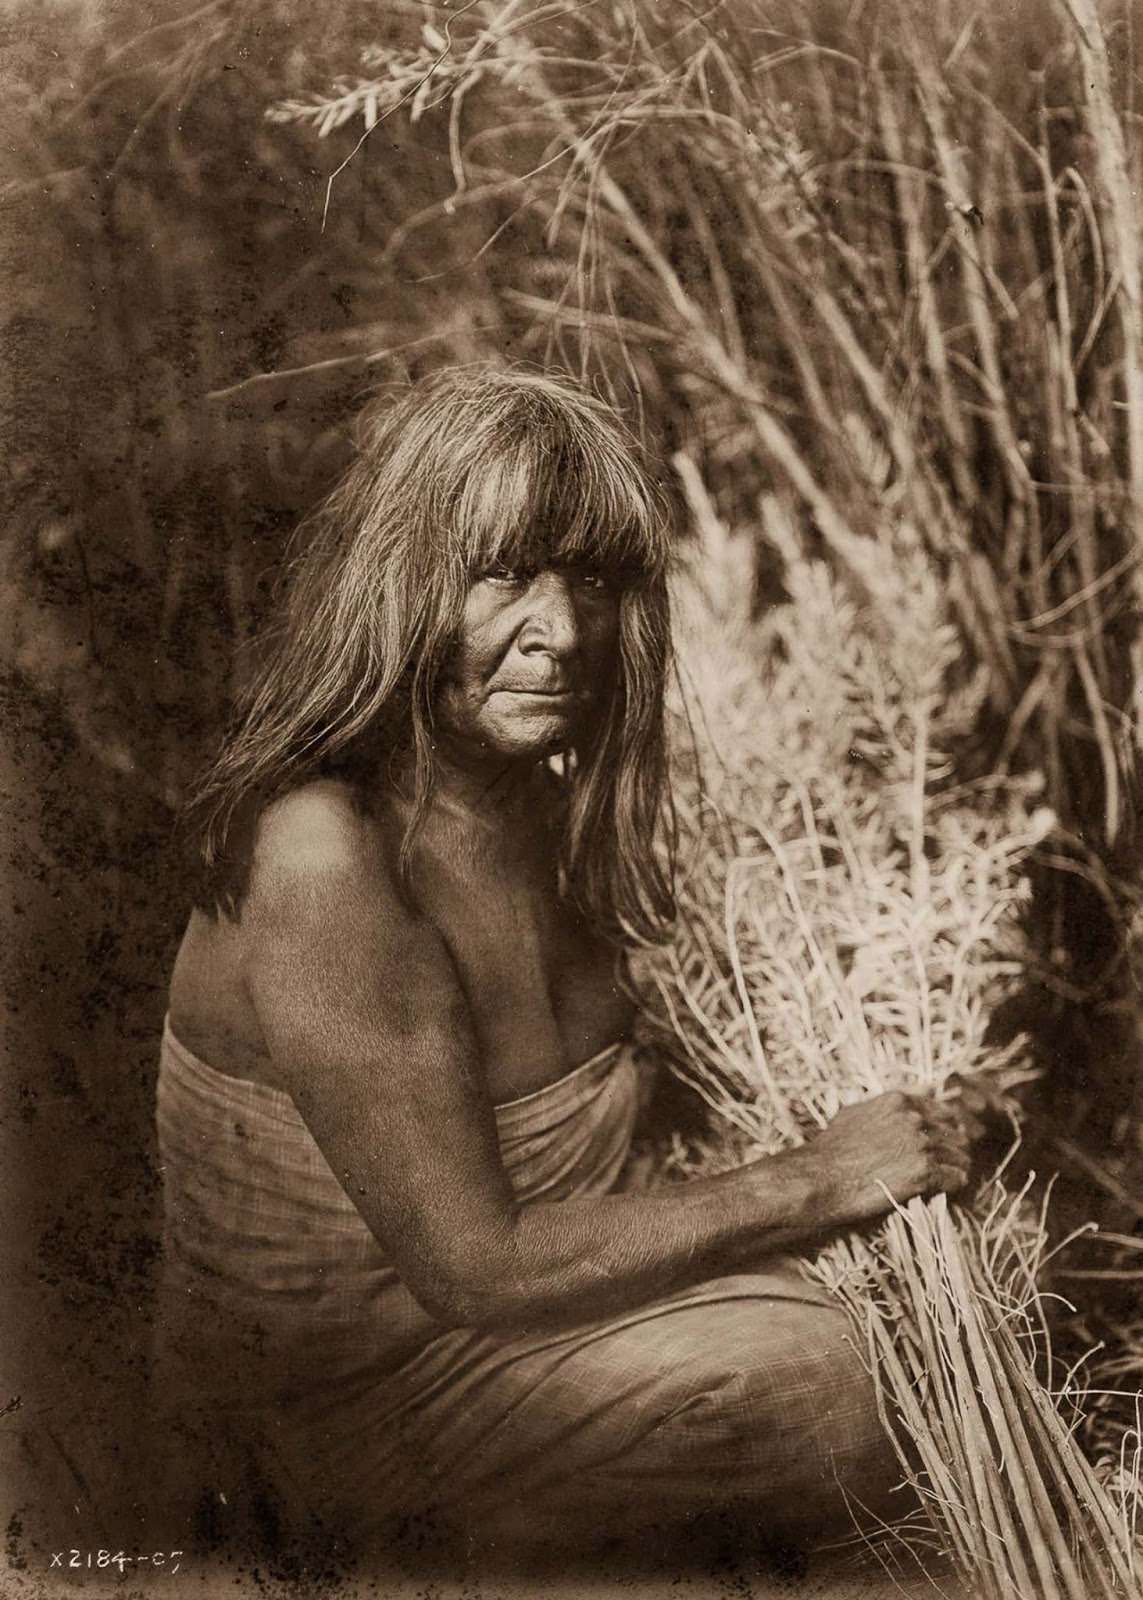 A Maricopa woman with arrow-brush stalks. 1907.